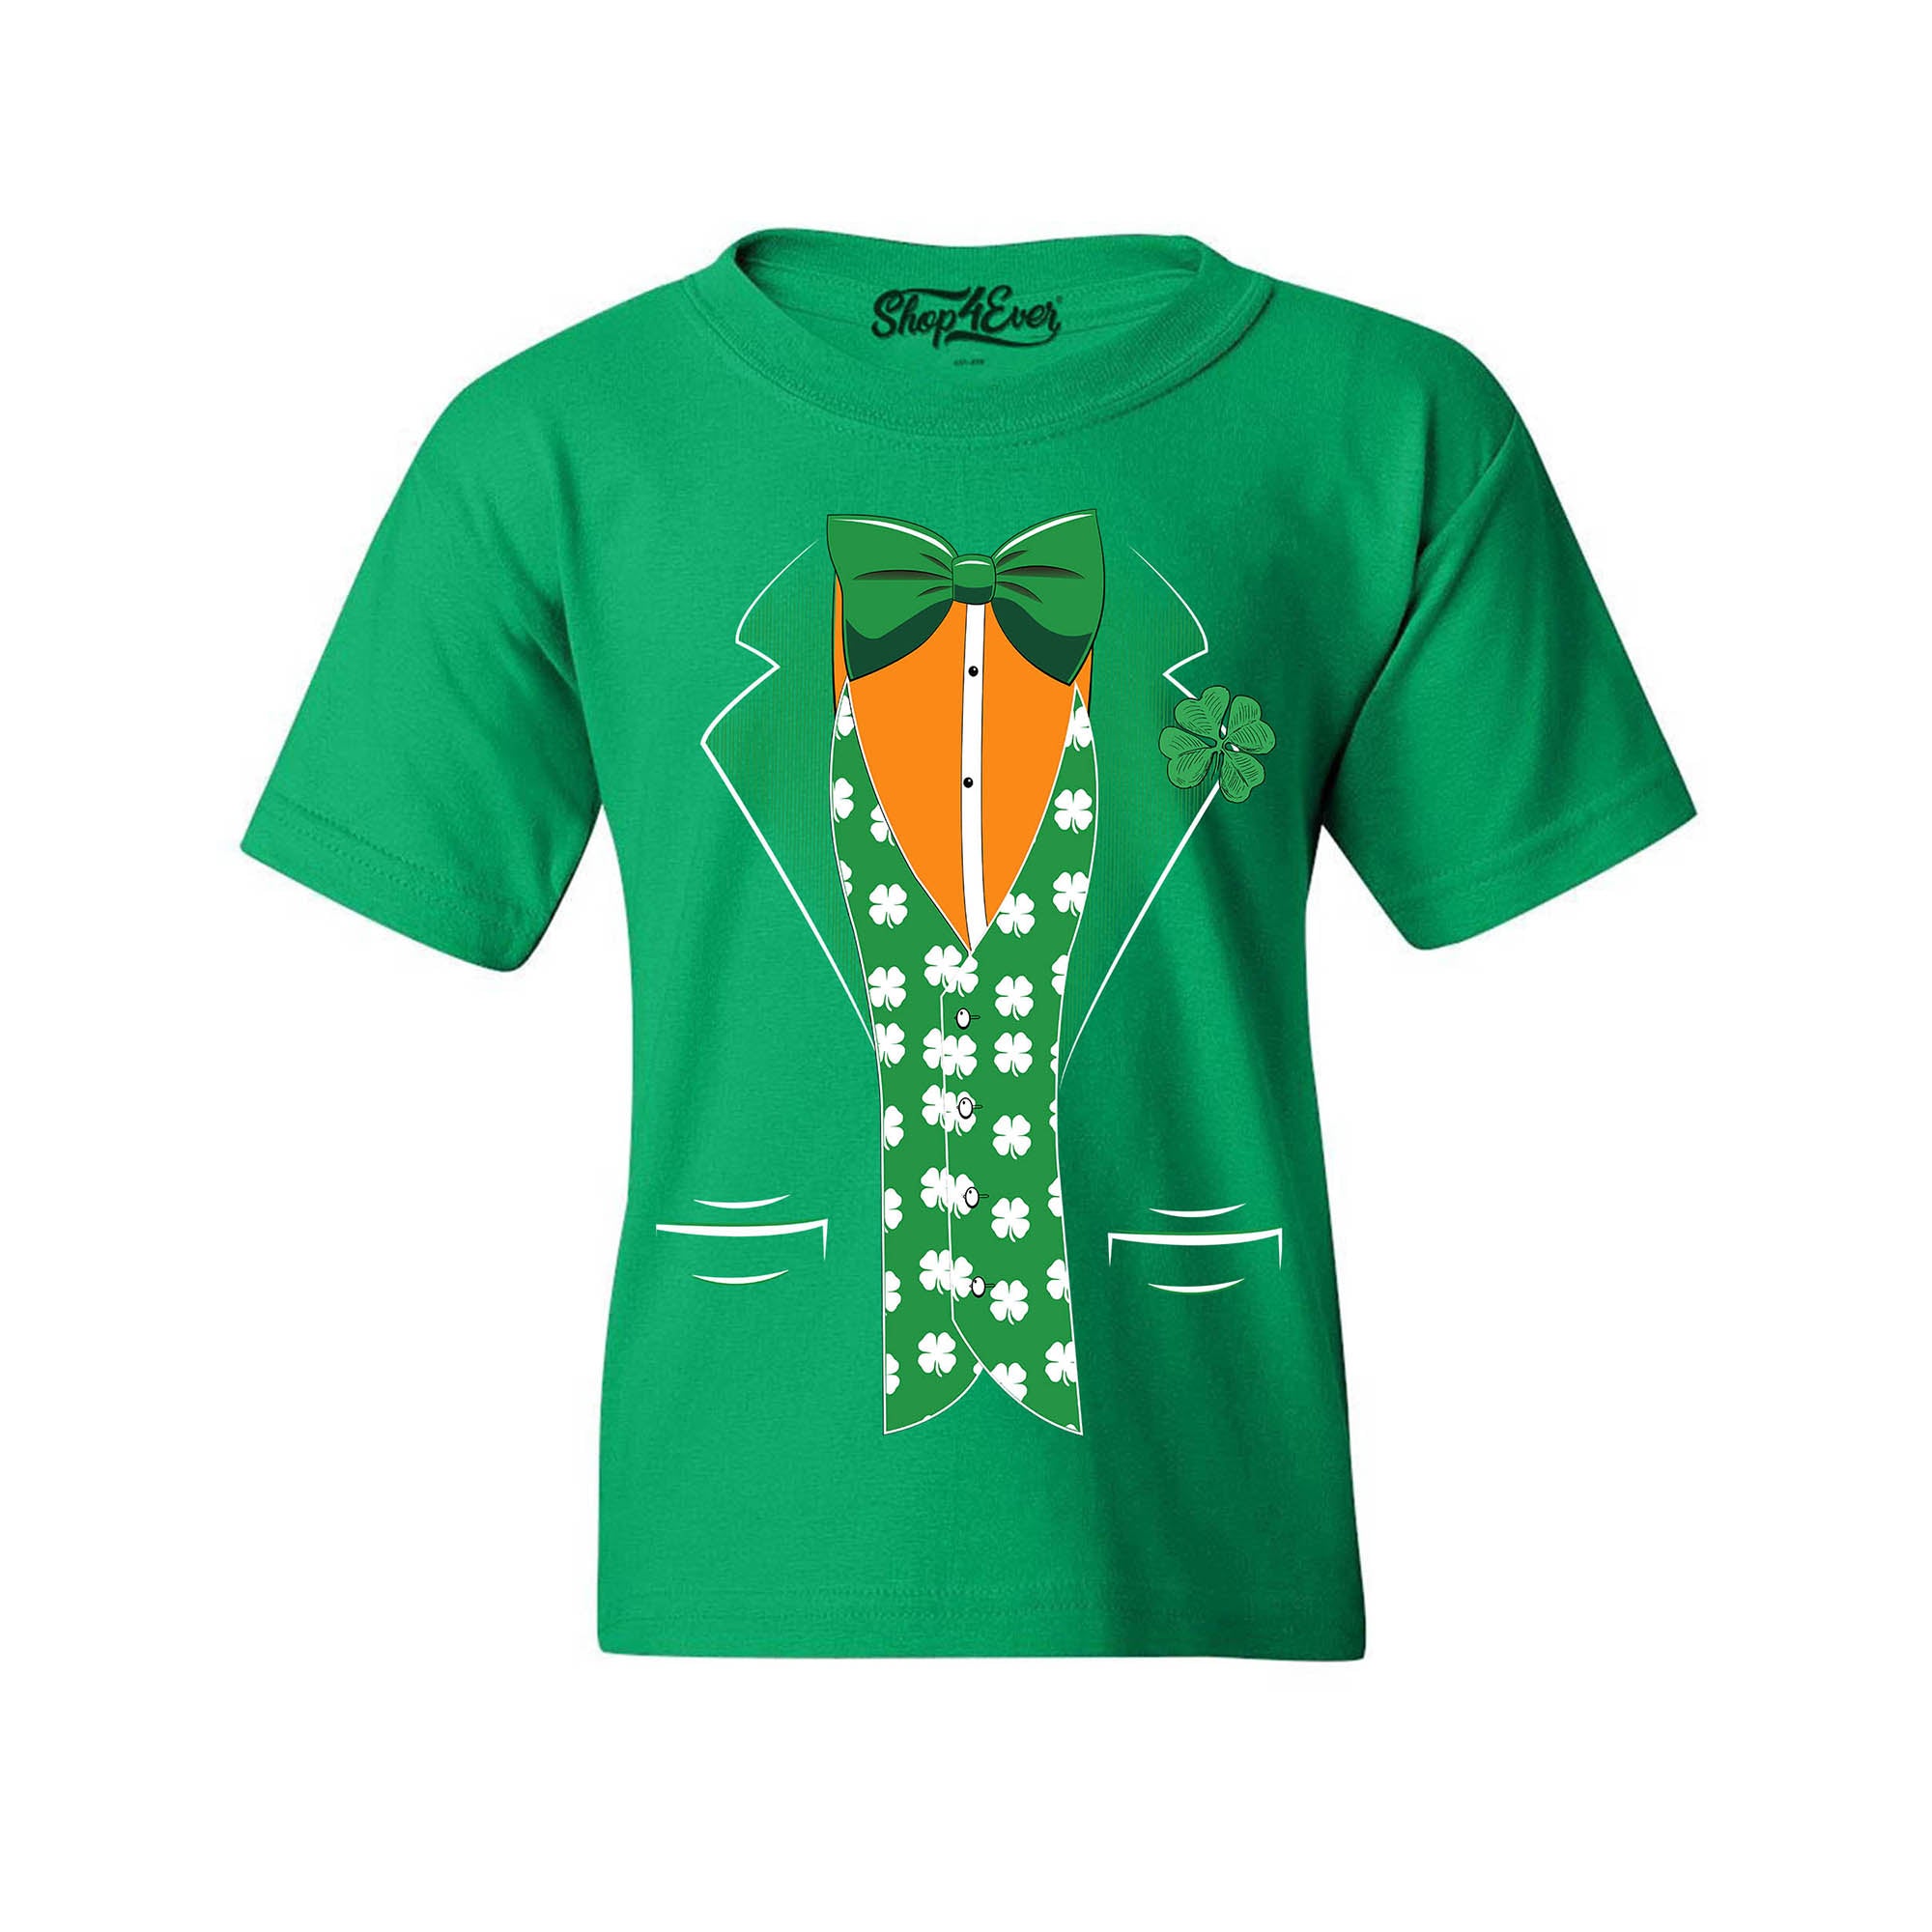 St. Patrick's Day Irish Tuxedo Leprechaun Costume Child's T-Shirt Kids Tee